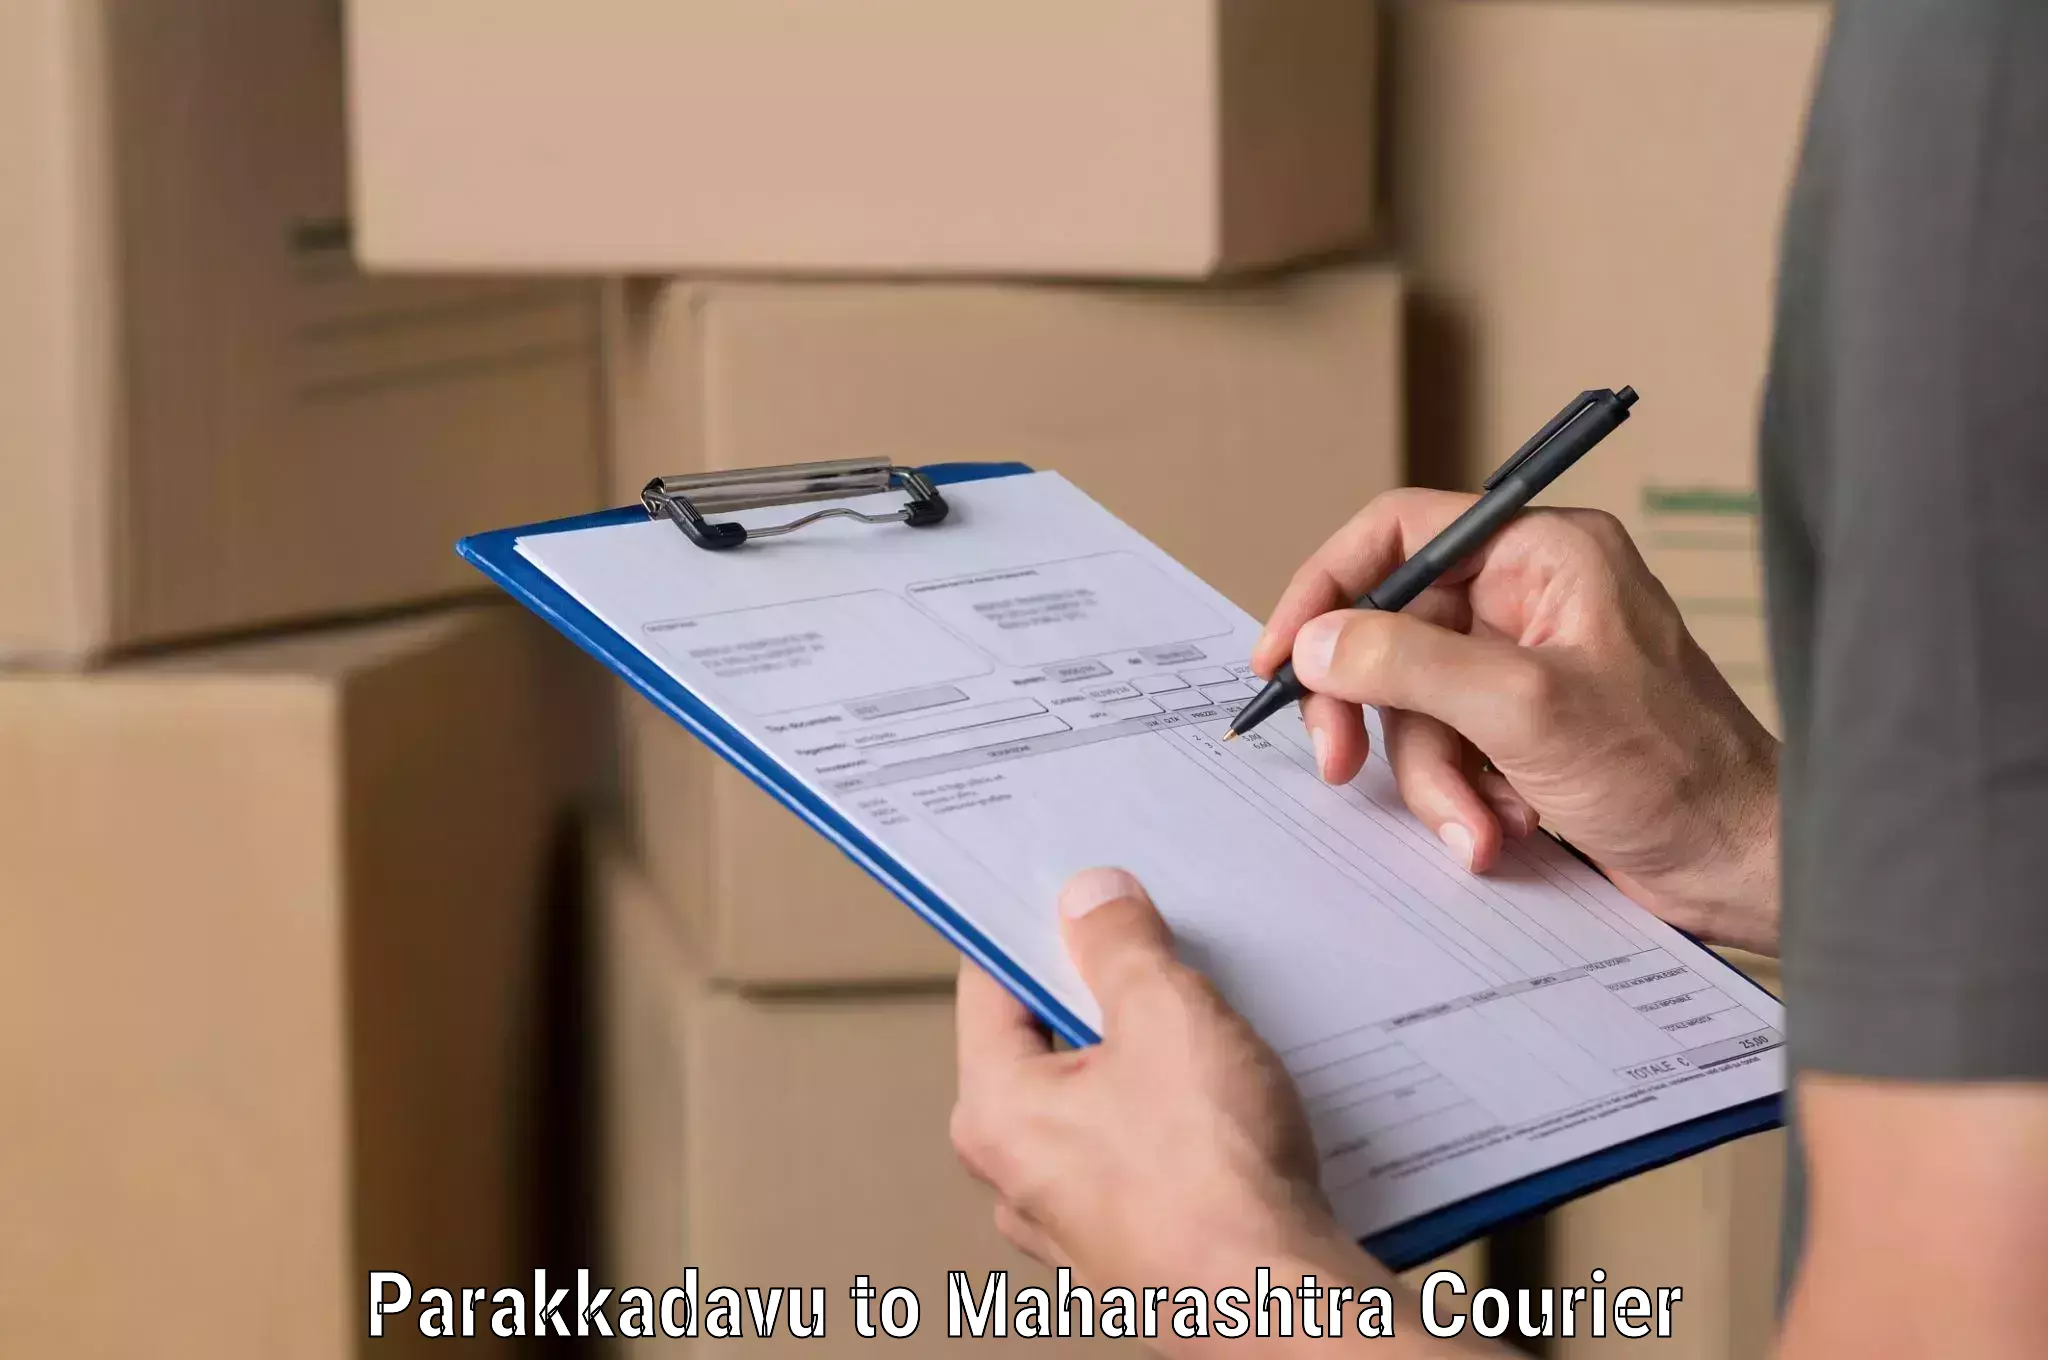 Comprehensive freight services Parakkadavu to Maharashtra